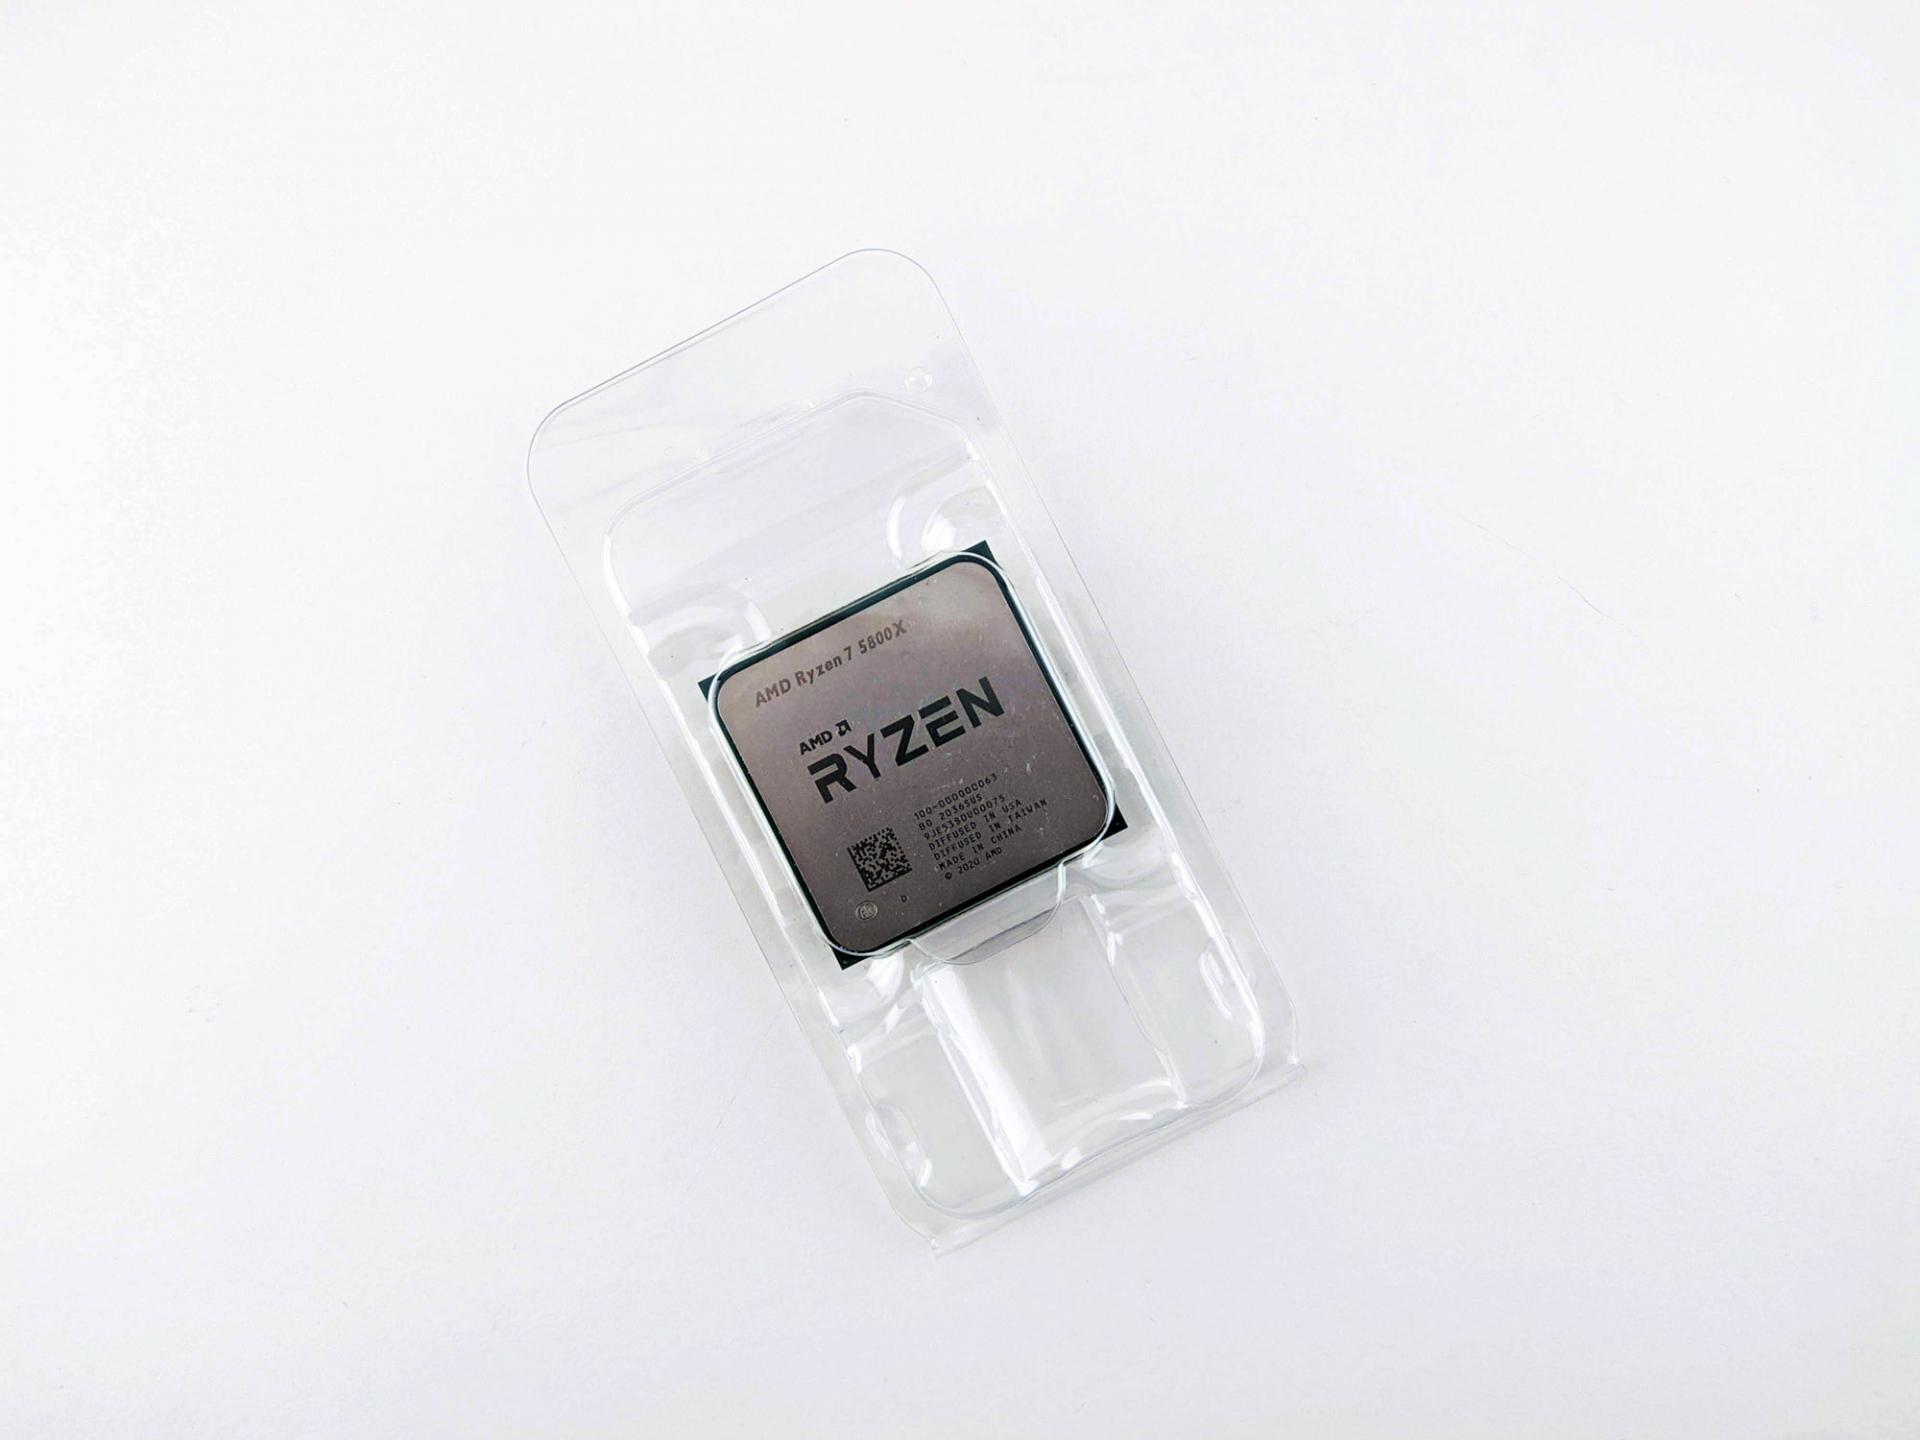 Тест-драйв процессора AMD Ryzen 7 5800X